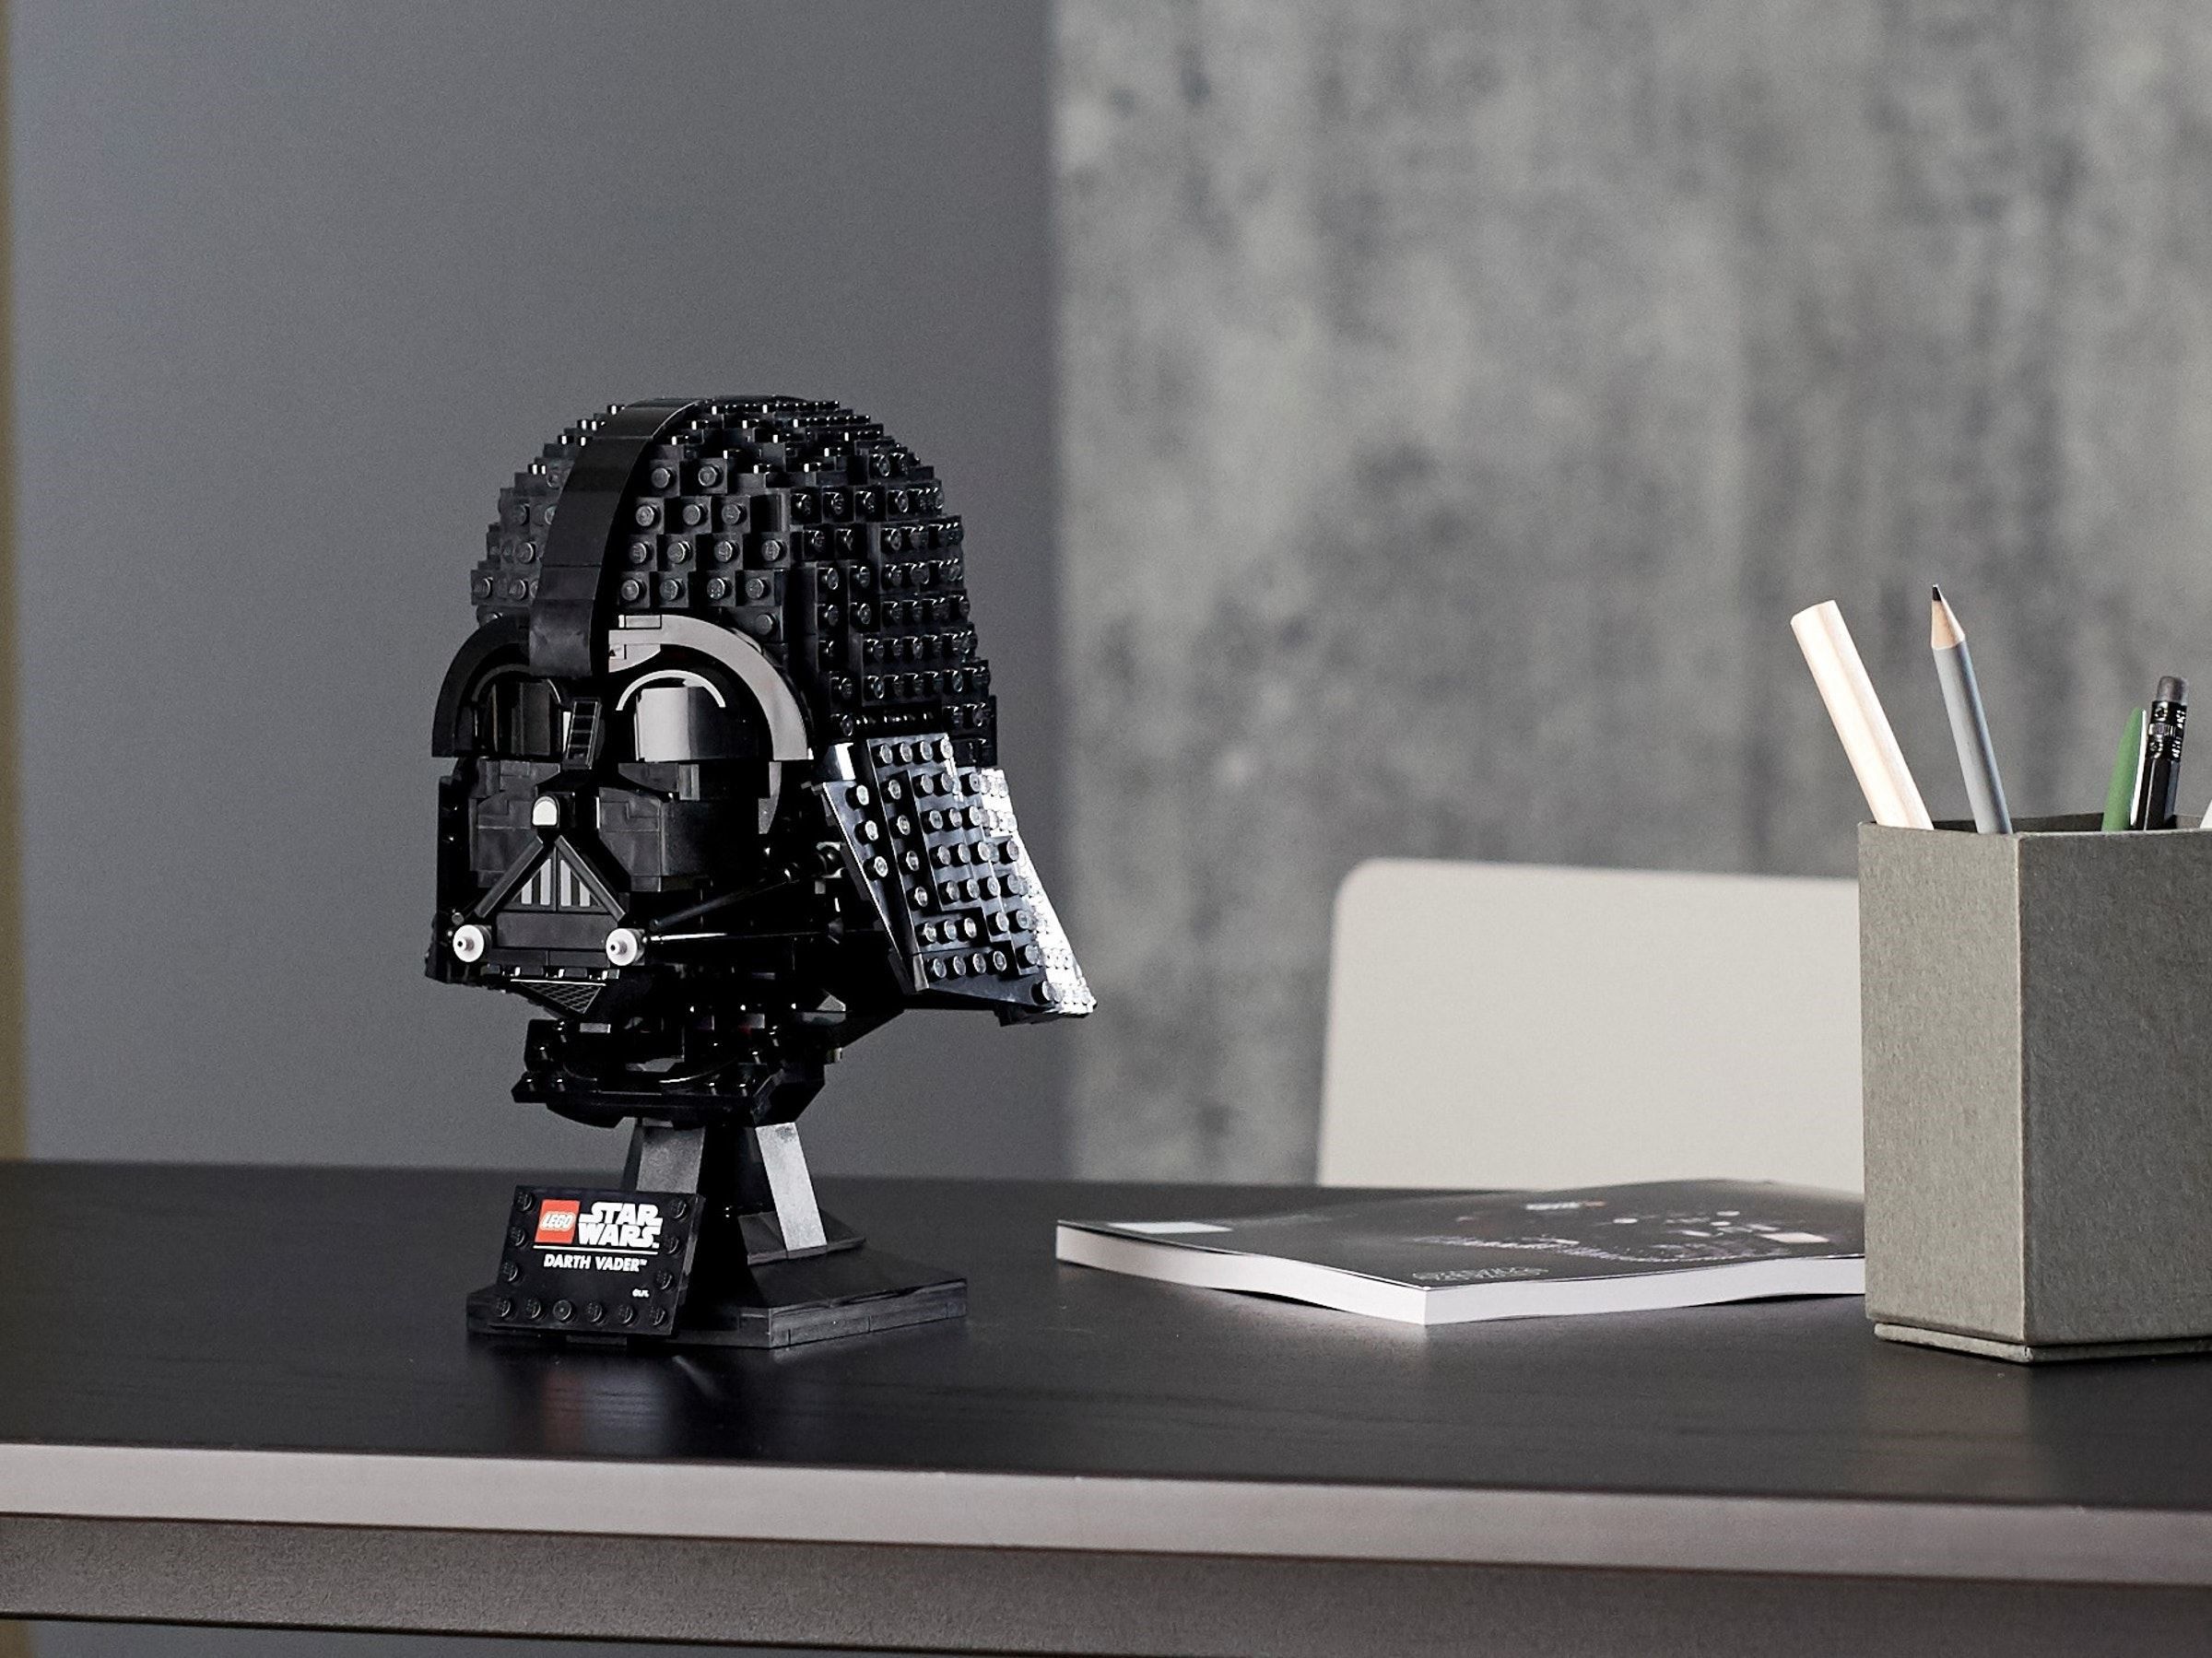 LEGO Star Wars Darth Vader Helmet set